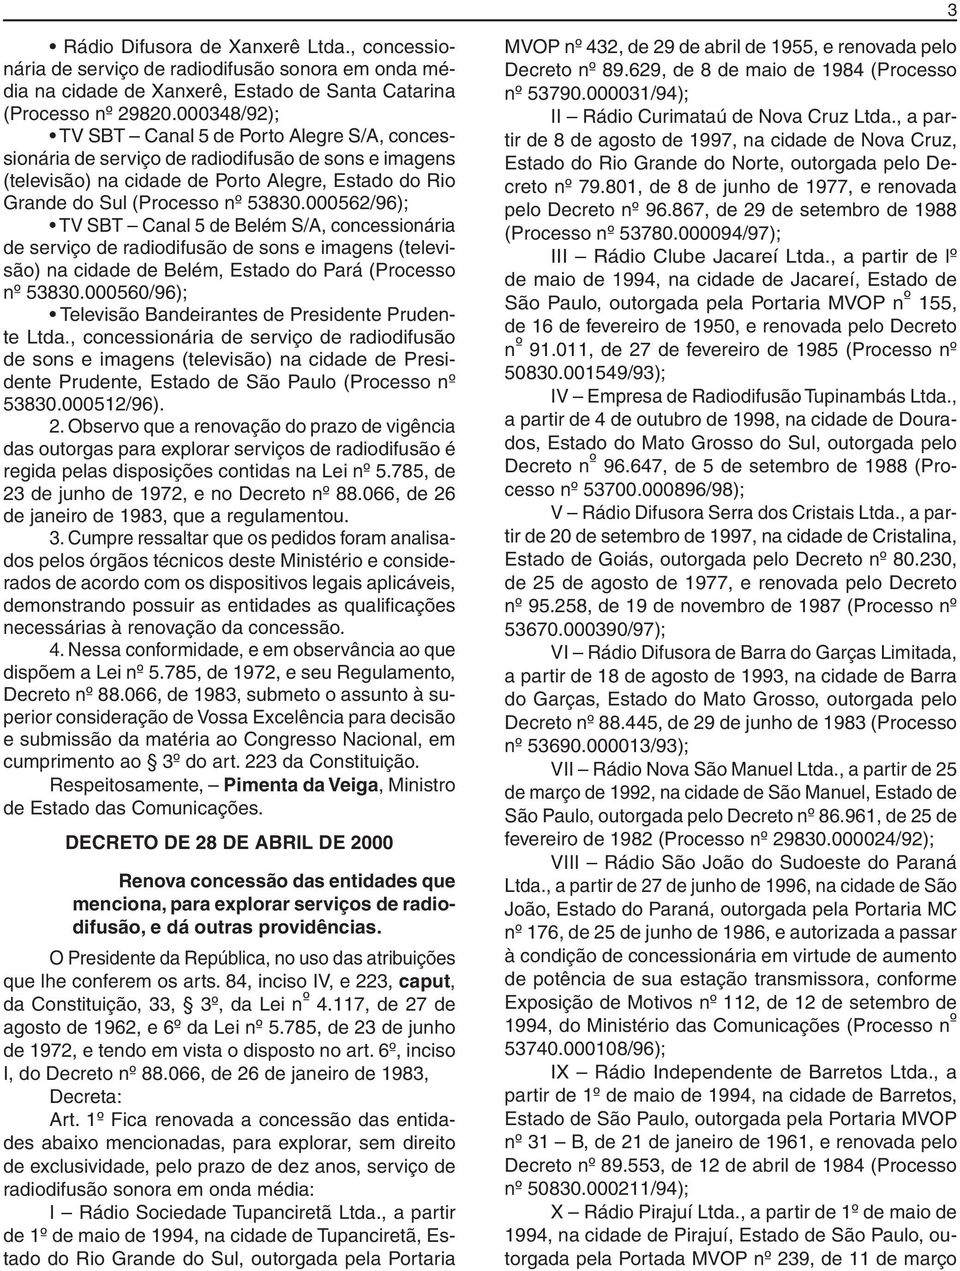 000562/96); TV SBT Canal 5 de Belém S/A, concessionária de serviço de radiodifusão de sons e imagens (televisão) na cidade de Belém, Estado do Pará (Processo nº 53830.